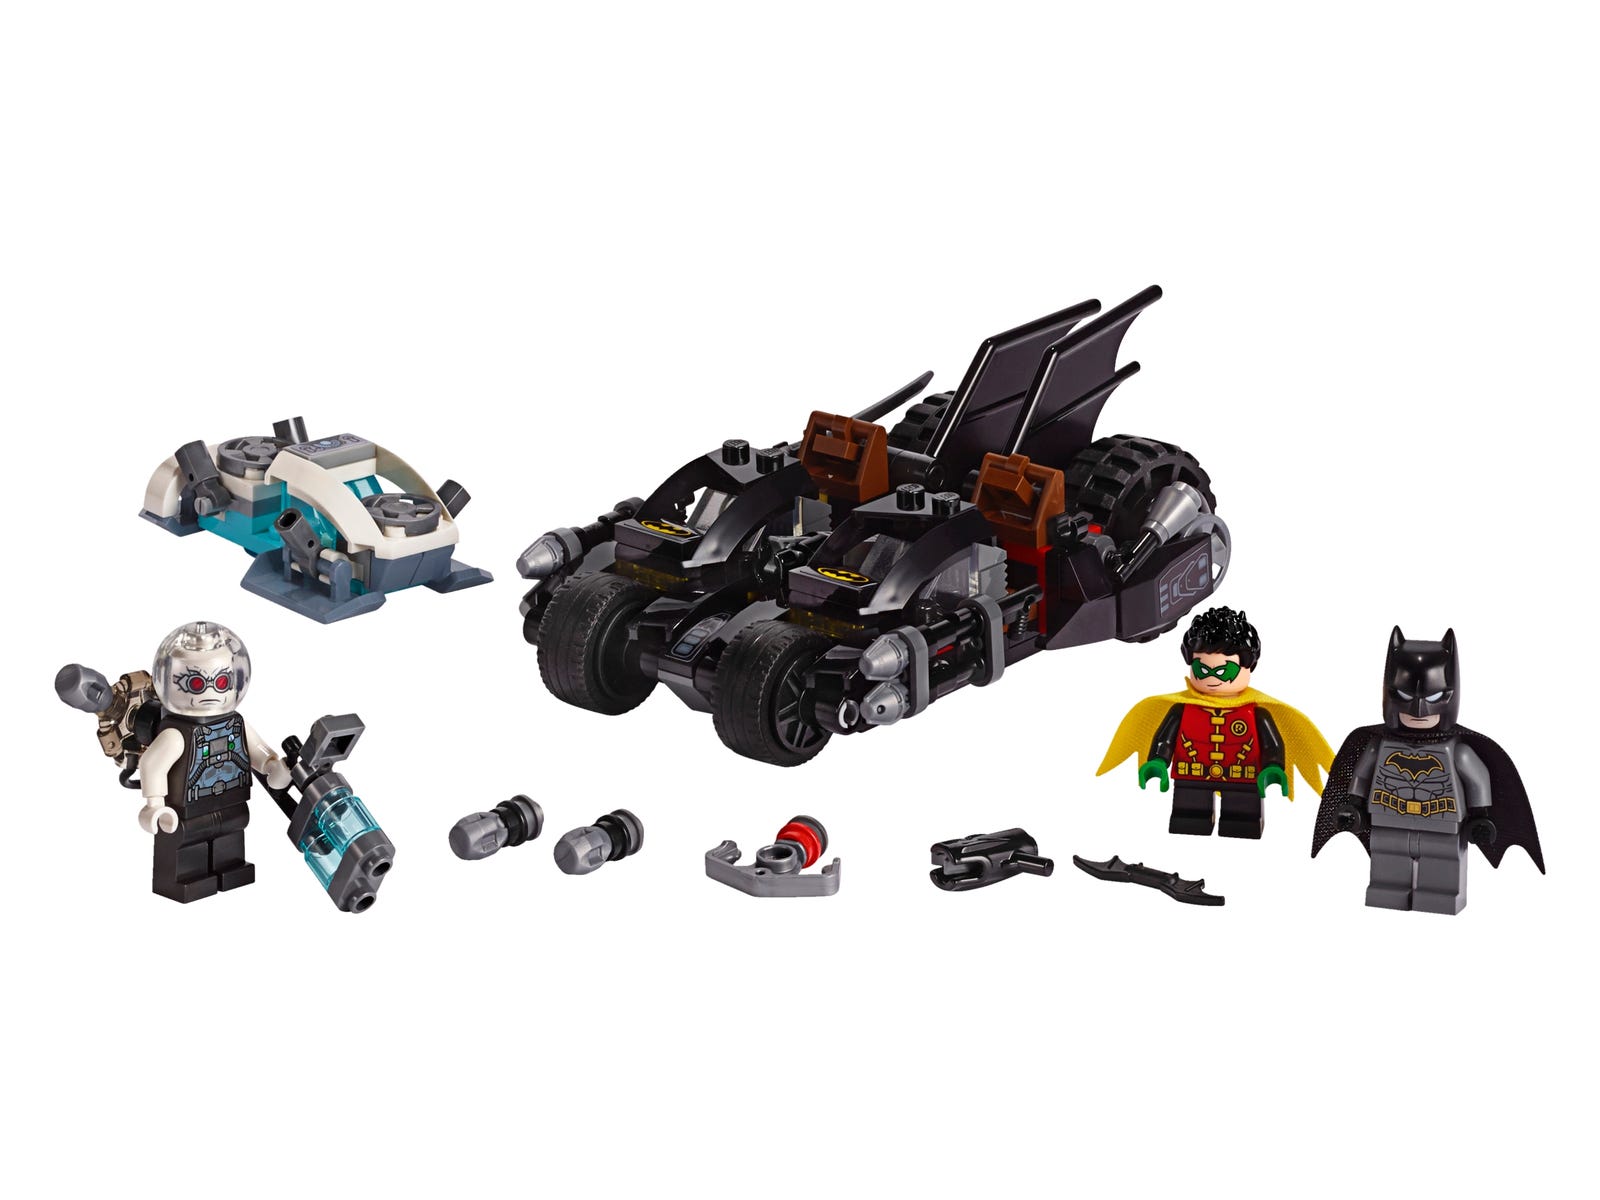 Mr. Freeze™ Batcycle™ Battle 76118. Batman™. Buy online at the Official LEGO® Shop US